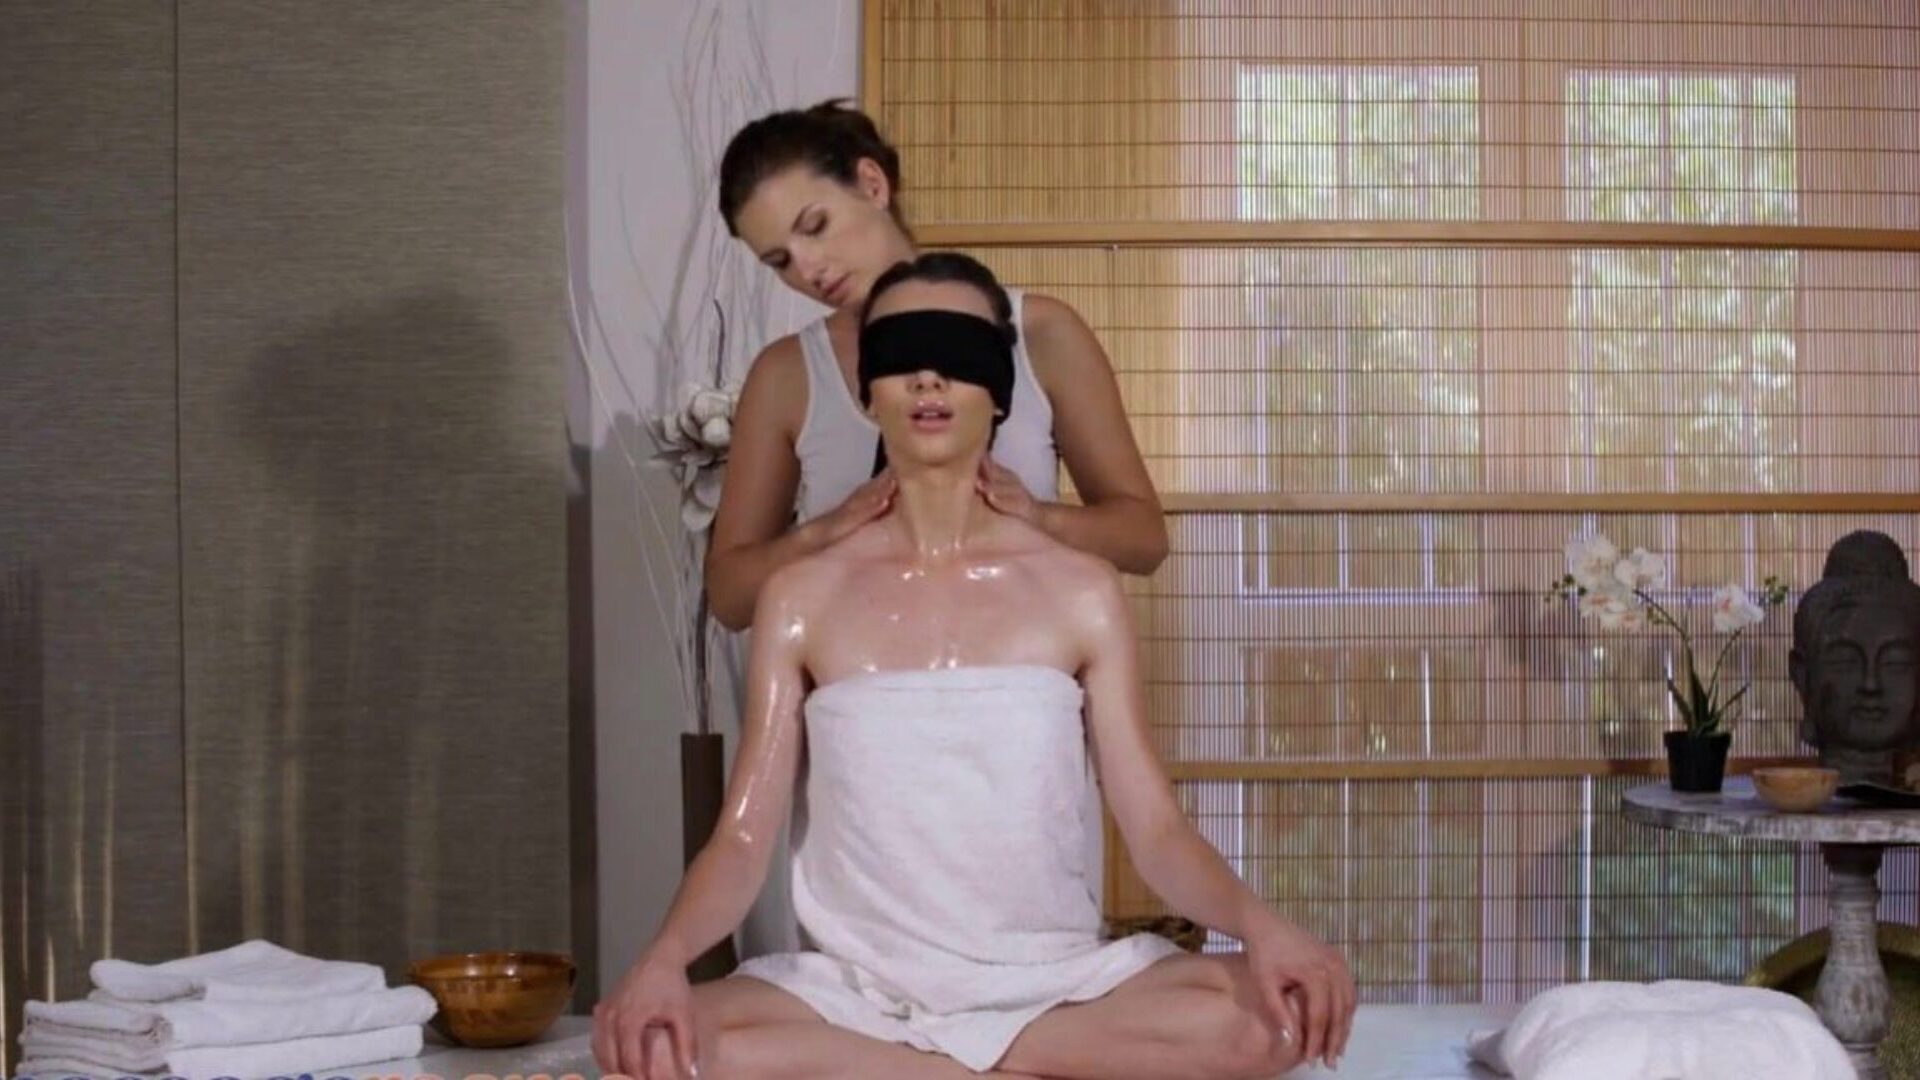 Massage Rooms Mature Jenifer Jane lesbian scissoring blindfold Adel Morel